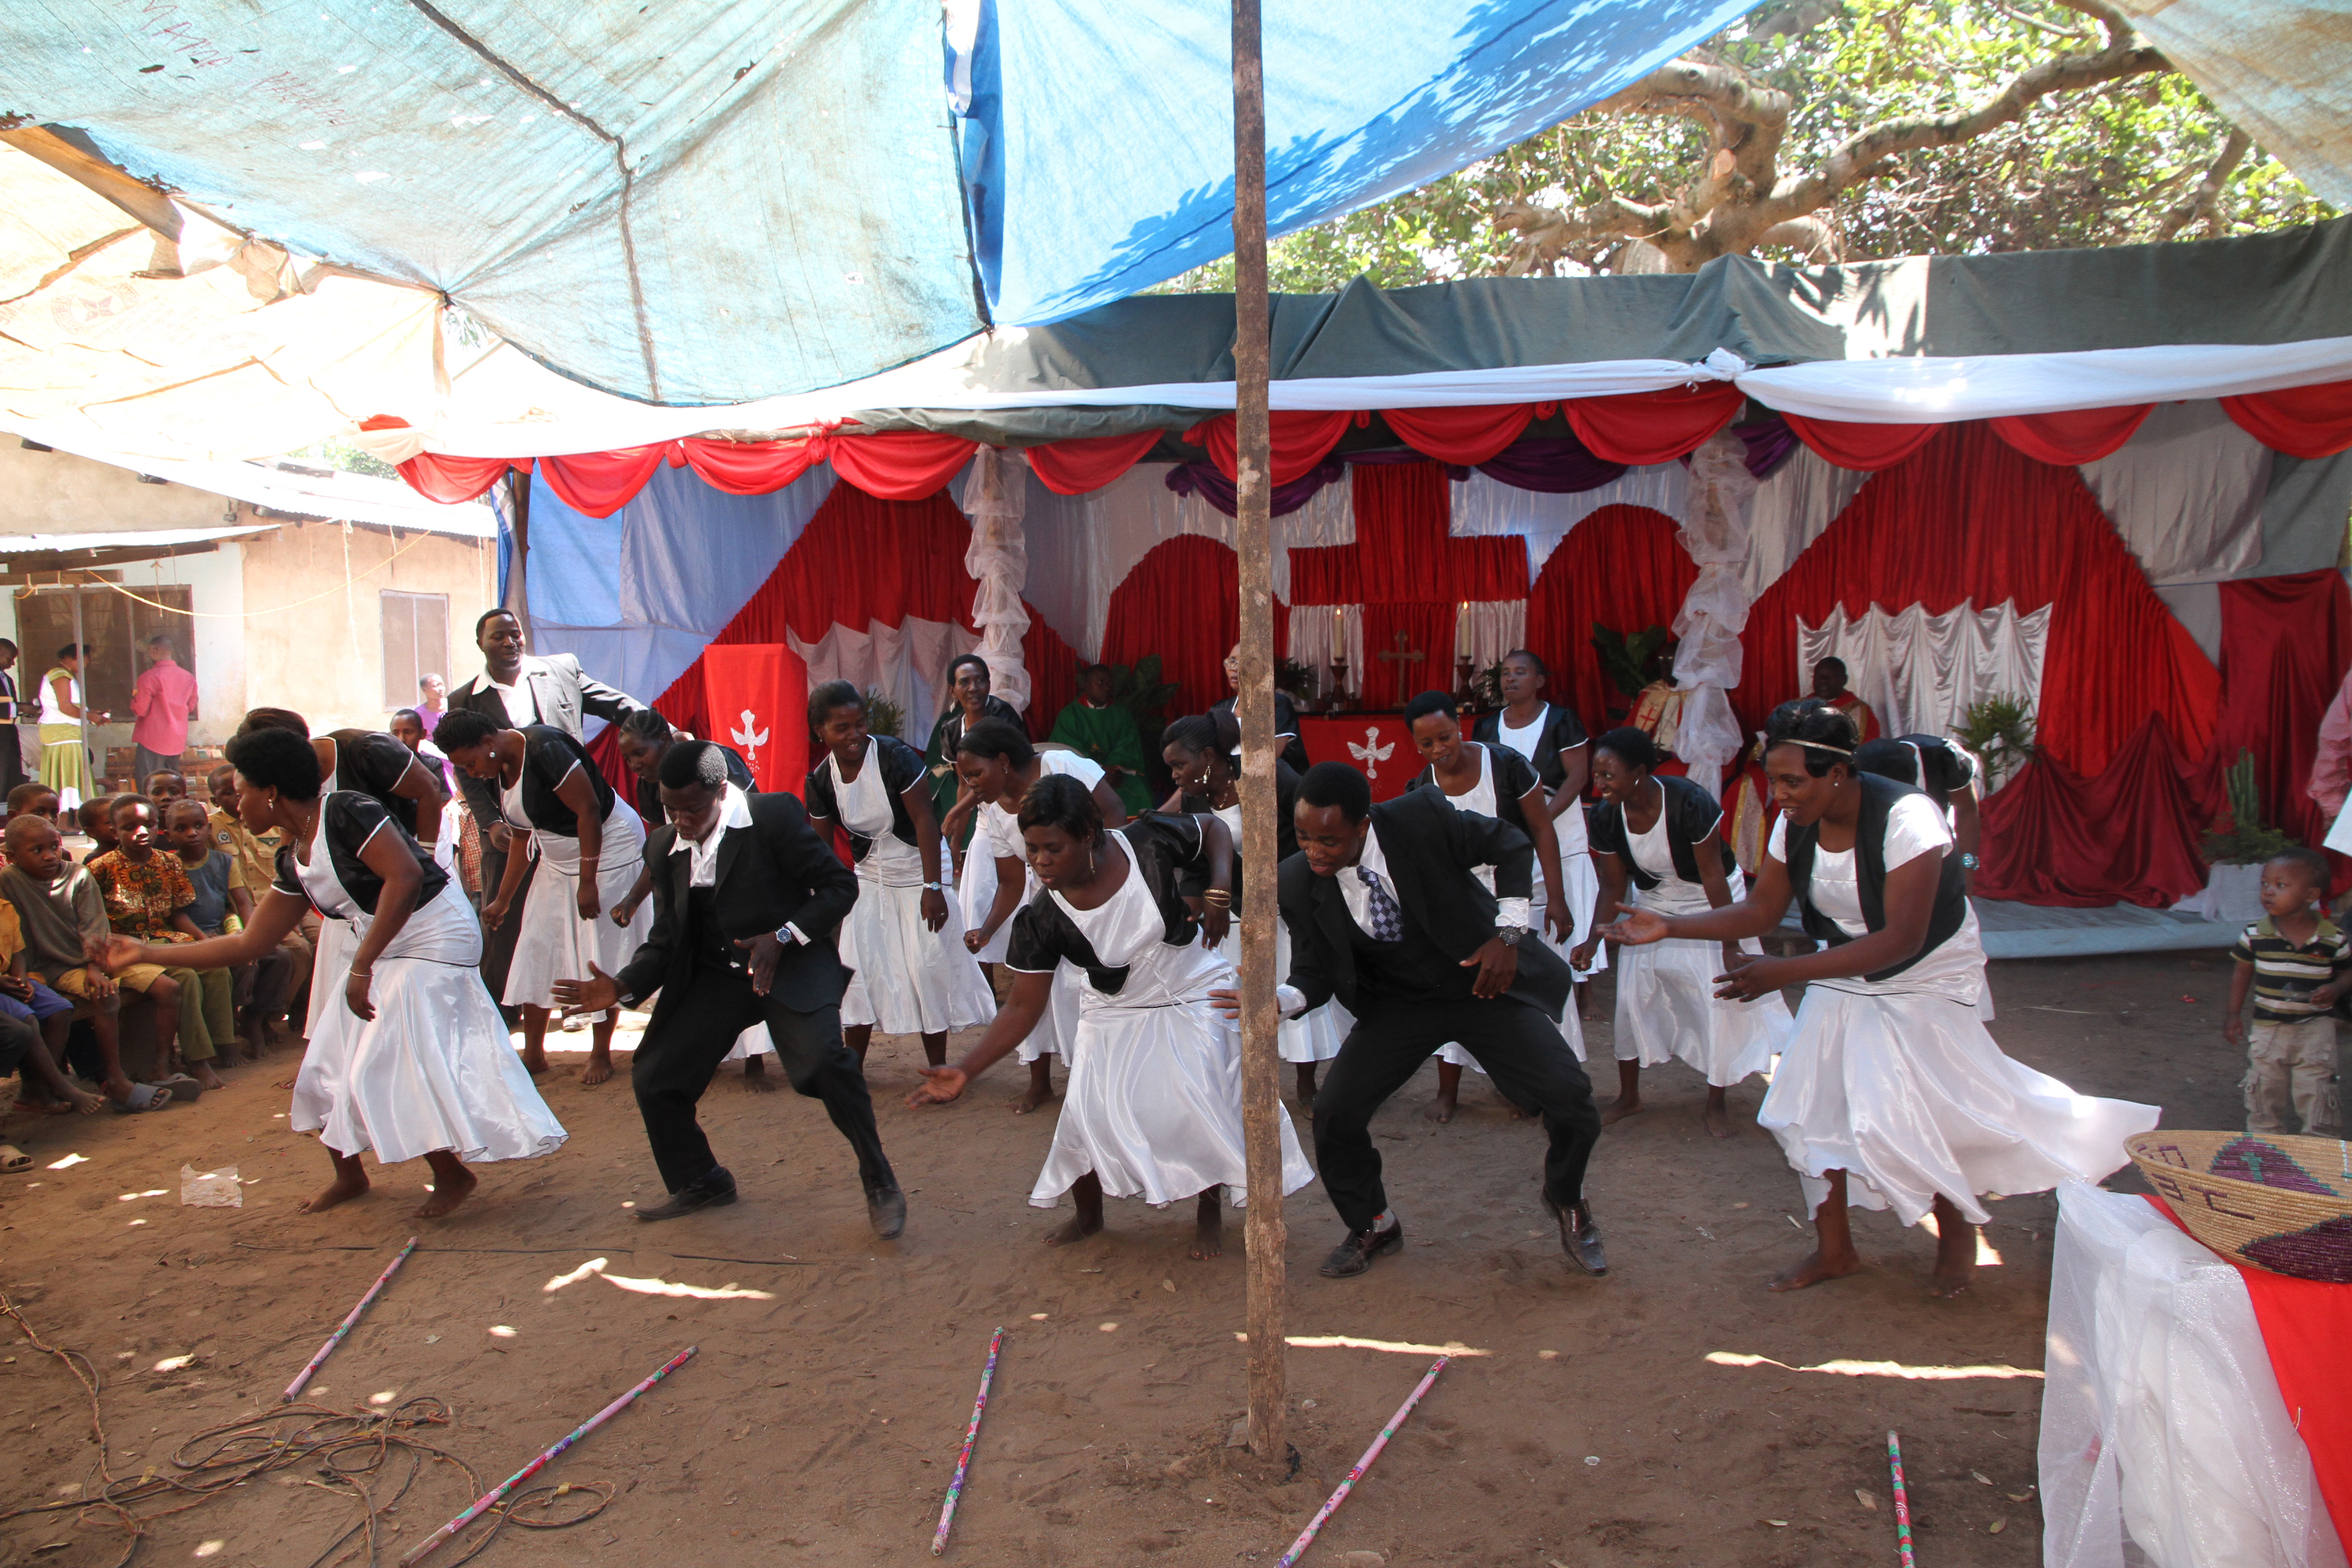 Muutaman kilometrin päässä sijaitsevan Mtibwan kuoro esiintyi juhlassa vauhdikkaasti.